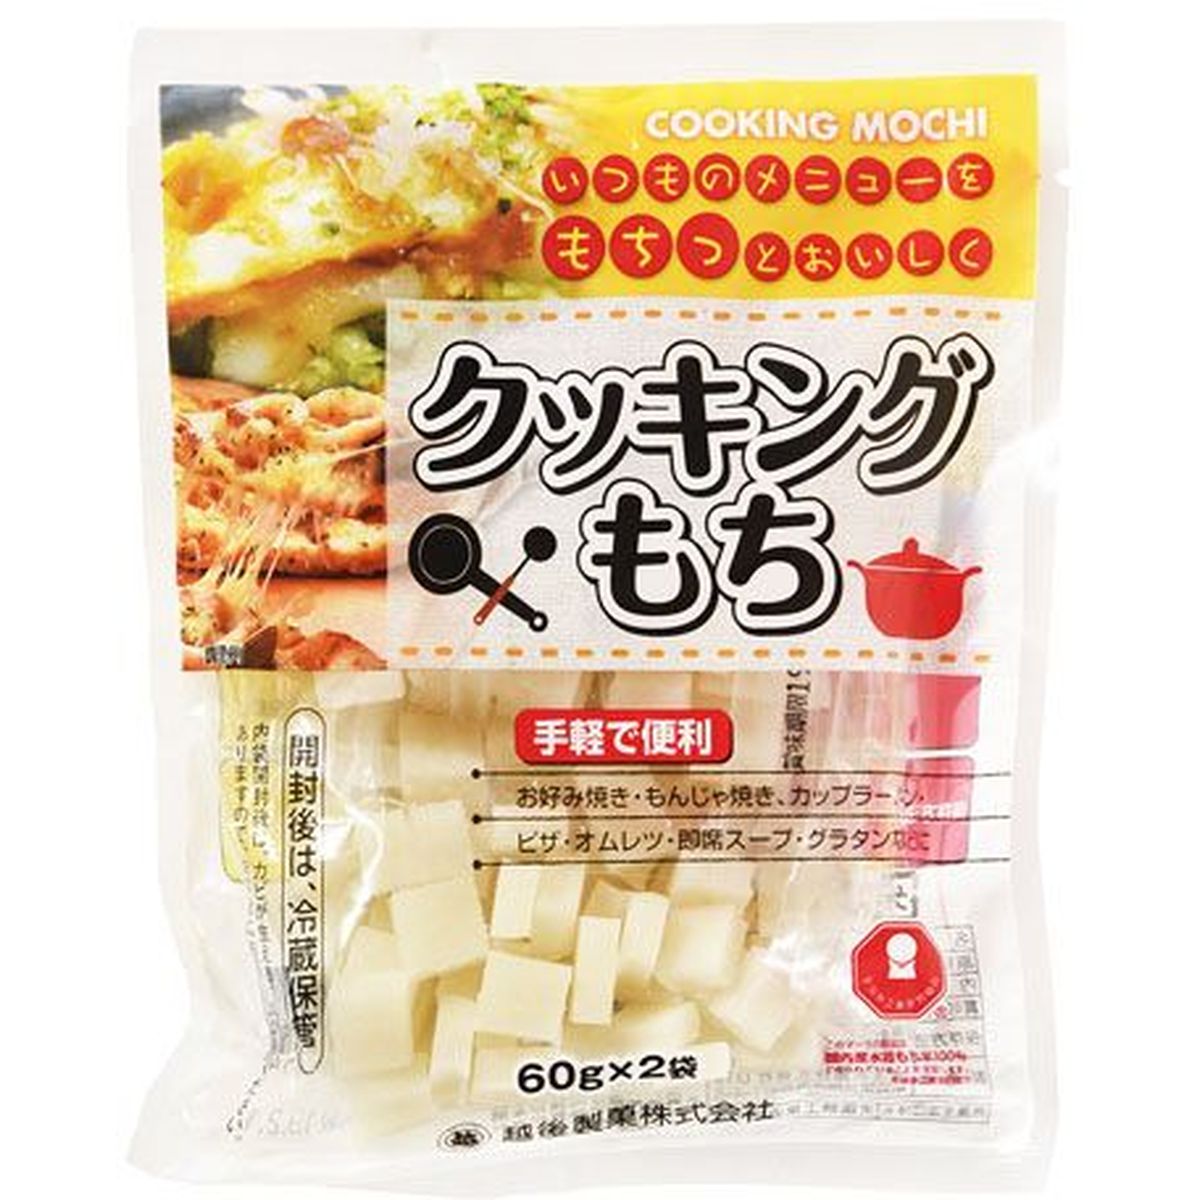 【15個入リ】越後製菓 クッキングモチ 60gX2袋